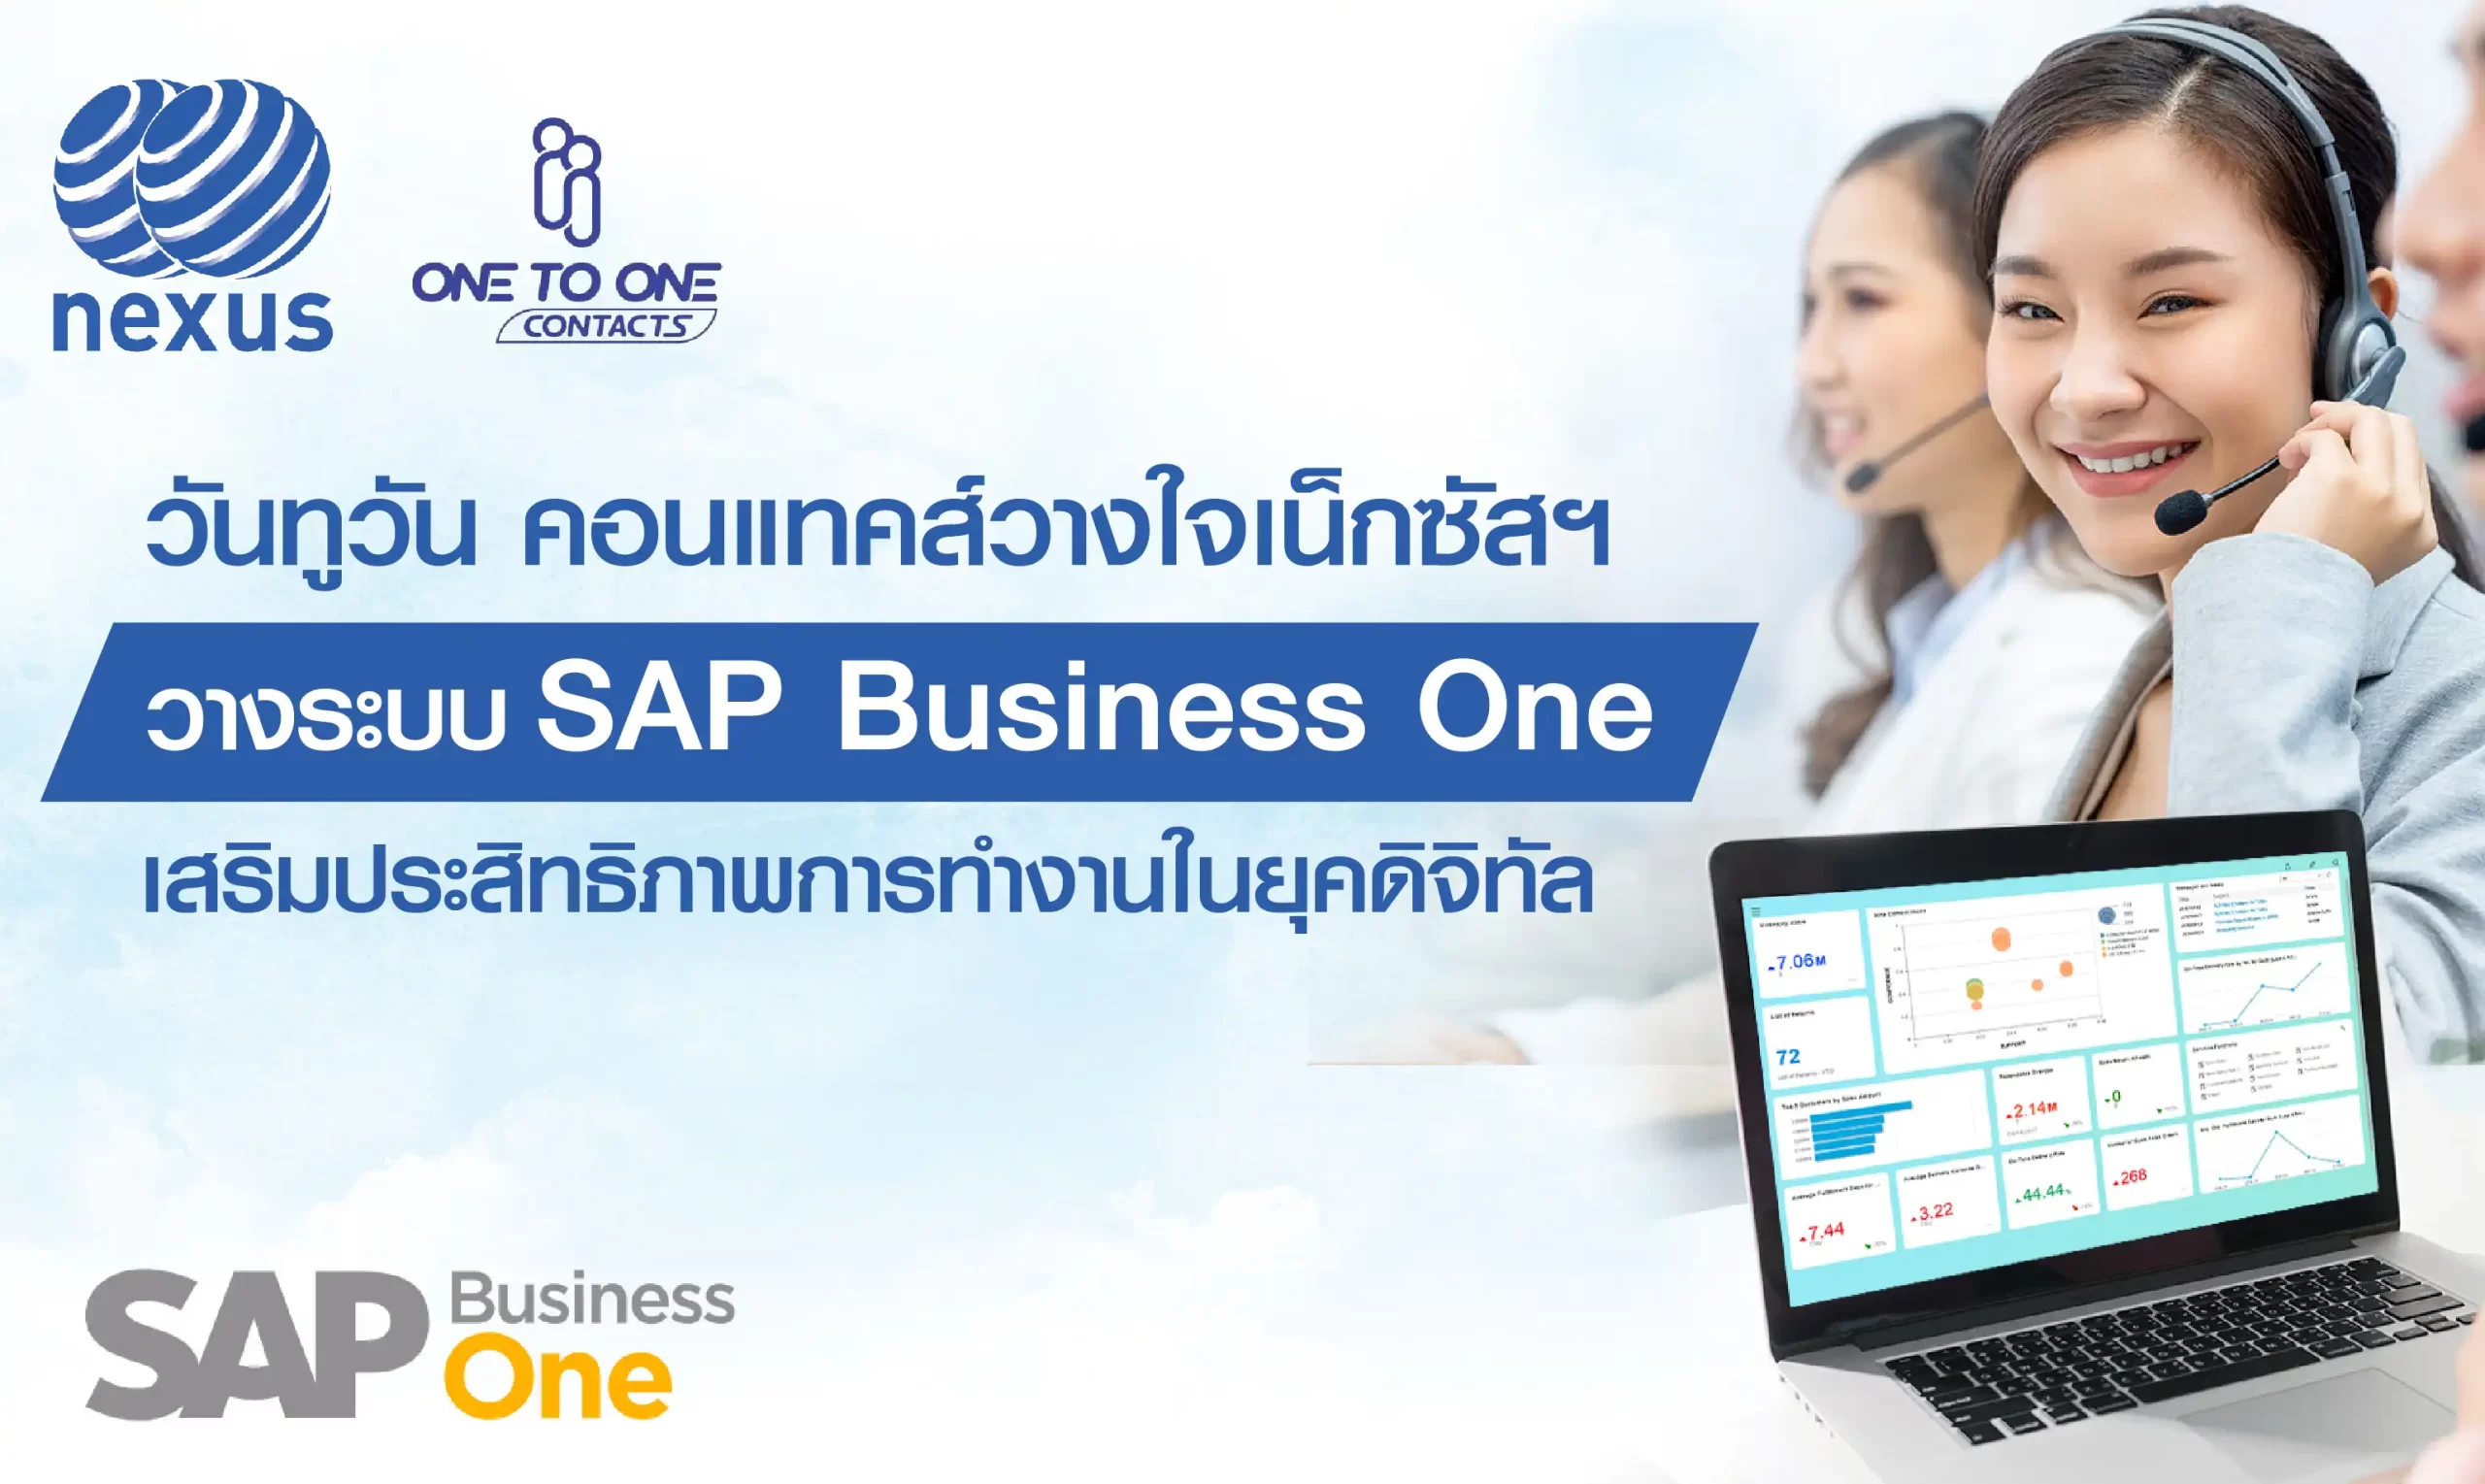 วันทูวัน คอนแทคส์ วางใจ เน็กซัสฯ วางระบบ SAP Business One